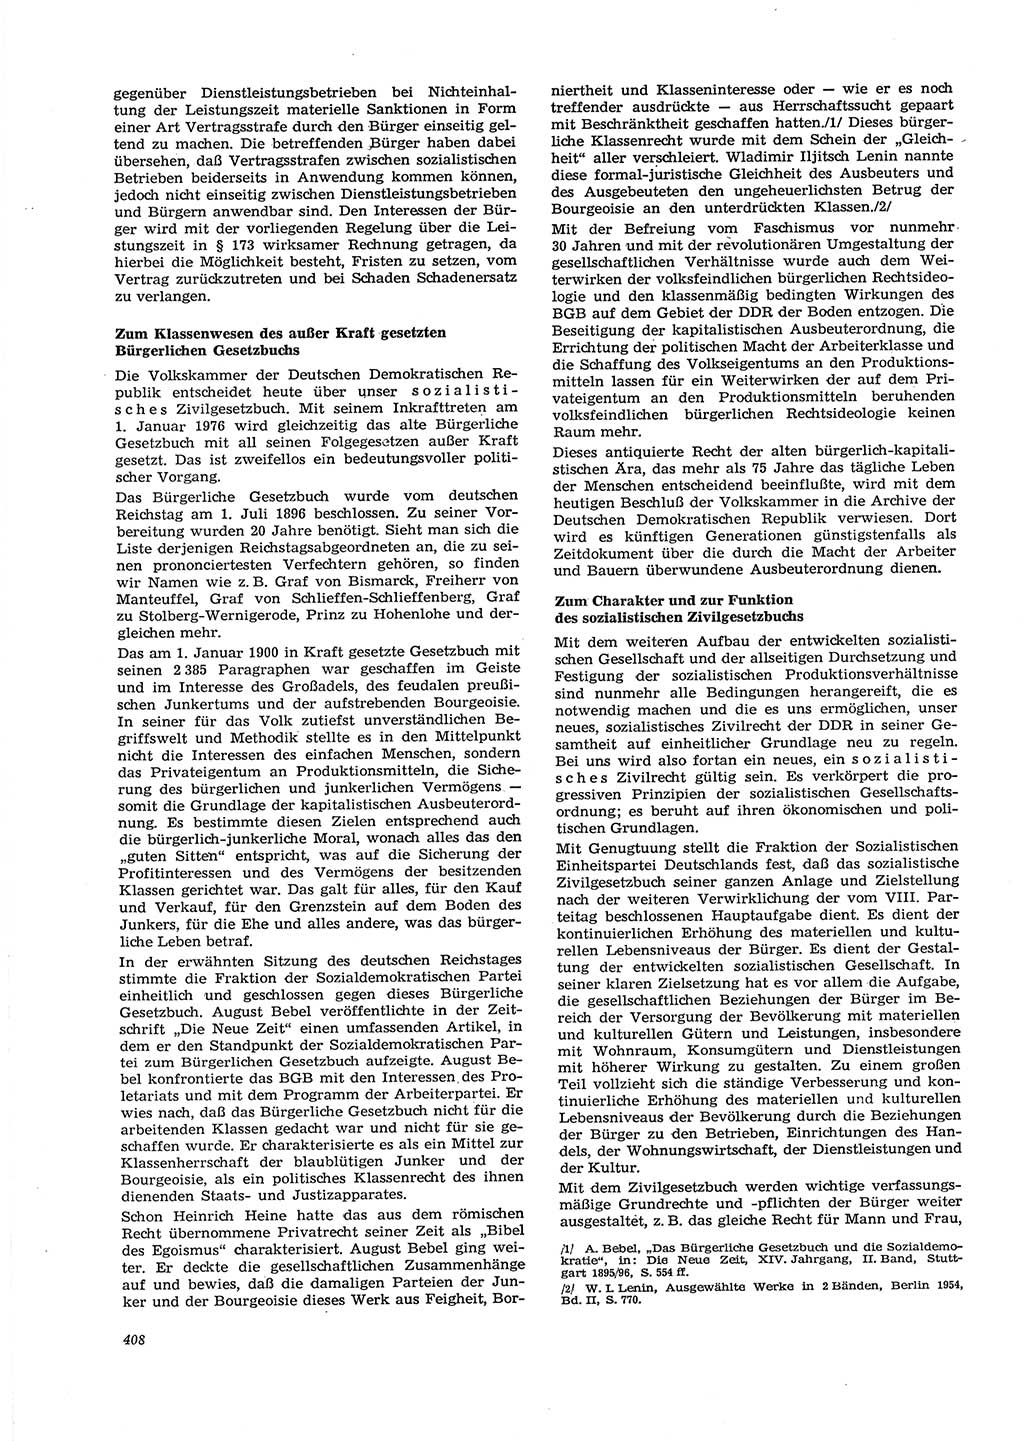 Neue Justiz (NJ), Zeitschrift für Recht und Rechtswissenschaft [Deutsche Demokratische Republik (DDR)], 29. Jahrgang 1975, Seite 408 (NJ DDR 1975, S. 408)